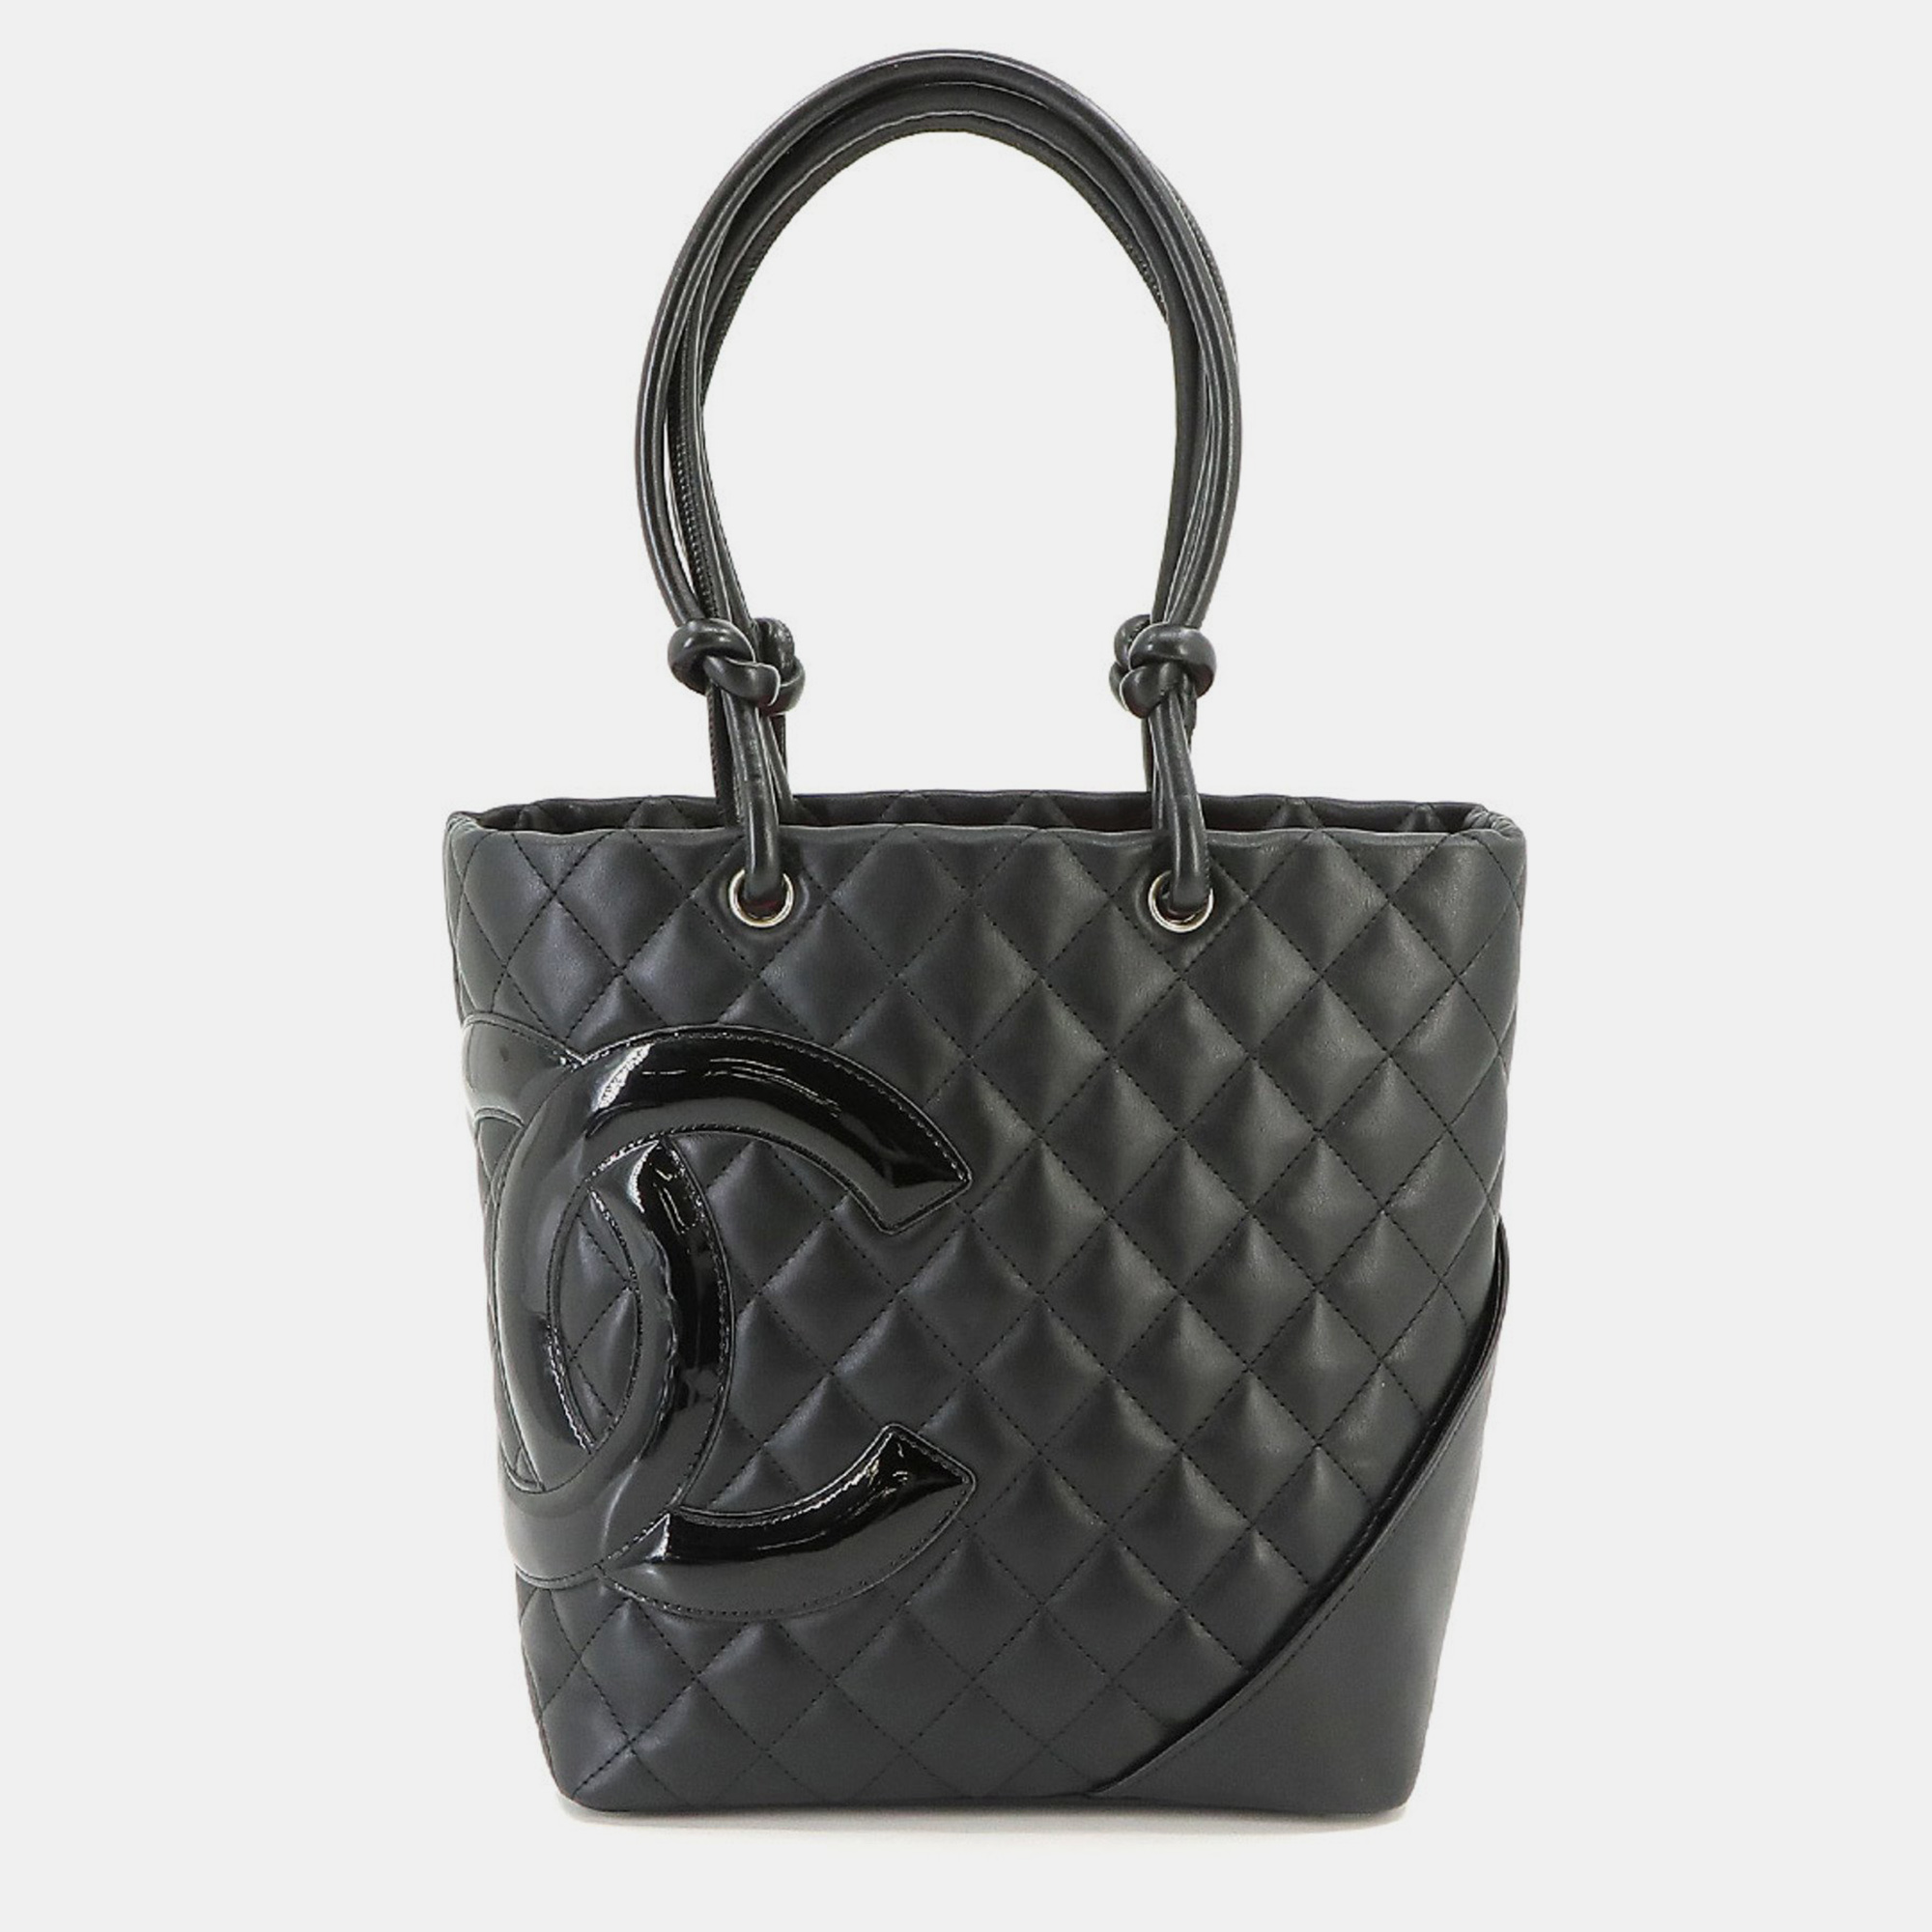 Chanel black leather small cambon ligne tote bag